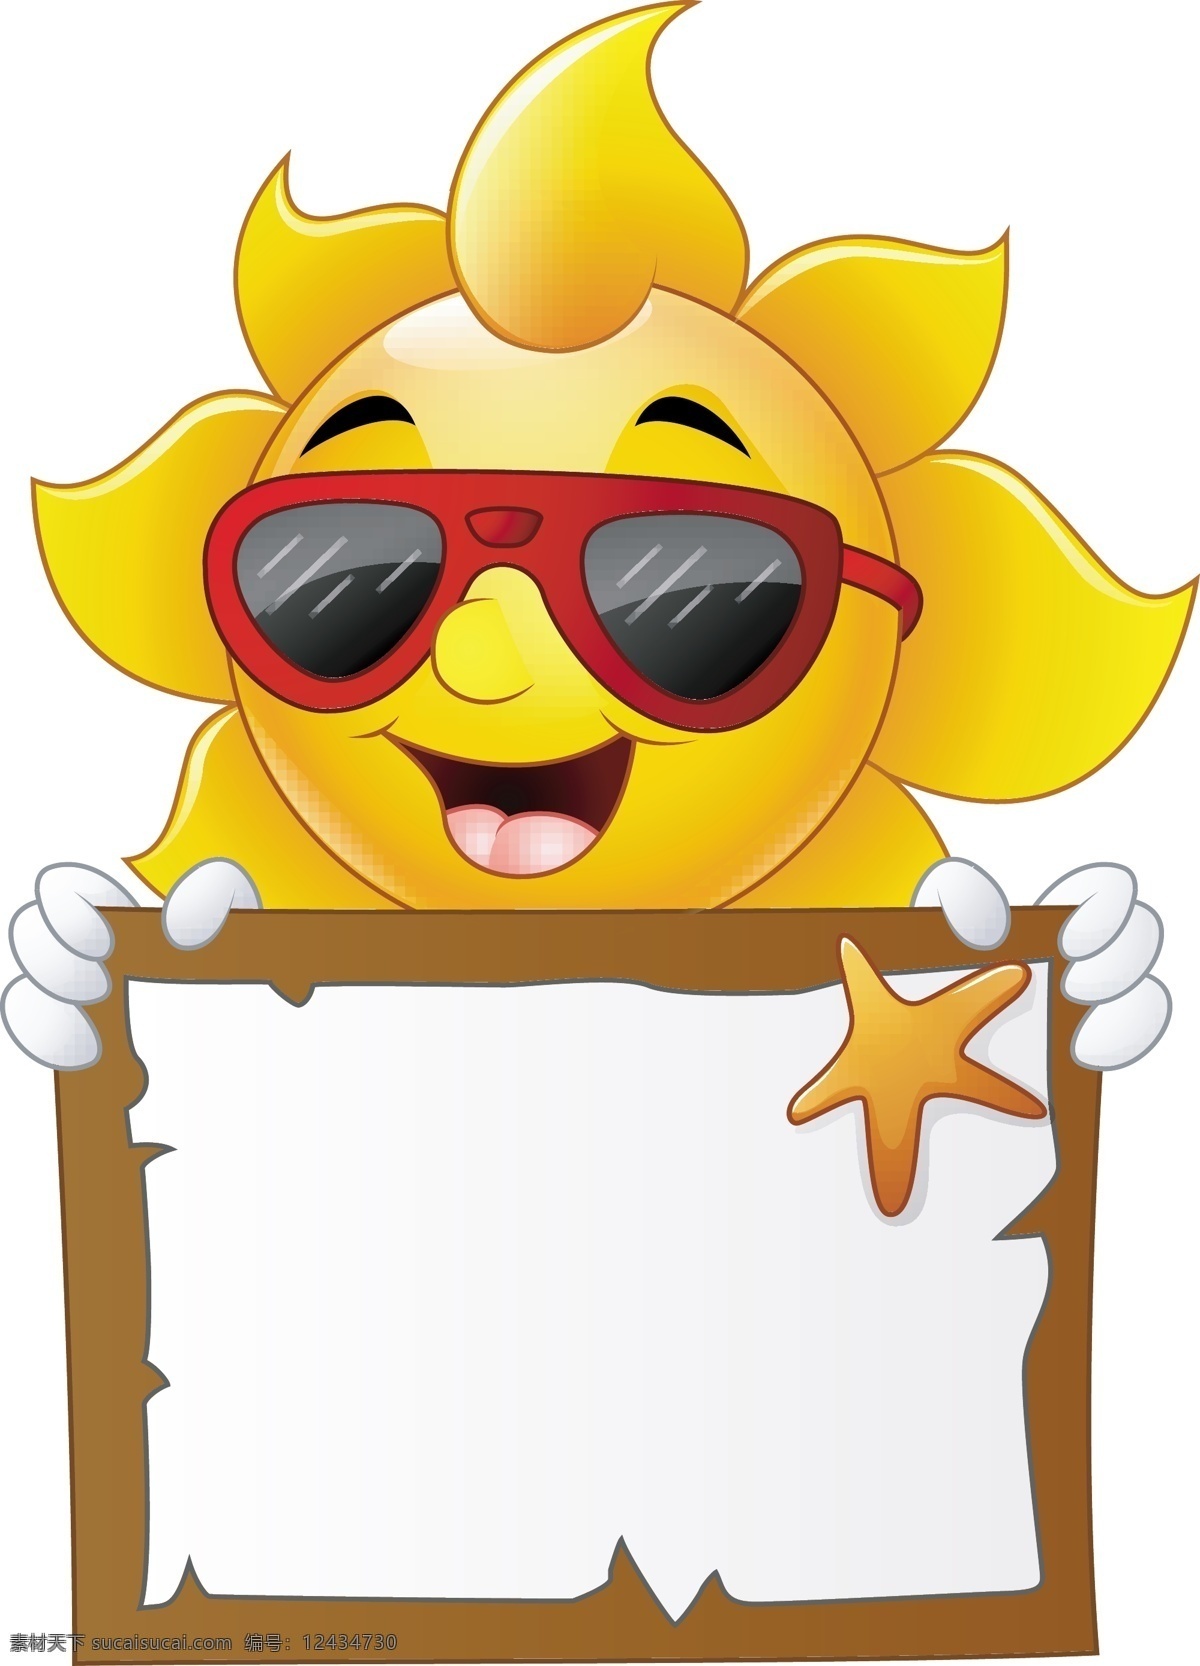 卡通太阳表情 太阳 卡通 表情 夏天 金黄色 可爱 夏天素材 卡通设计